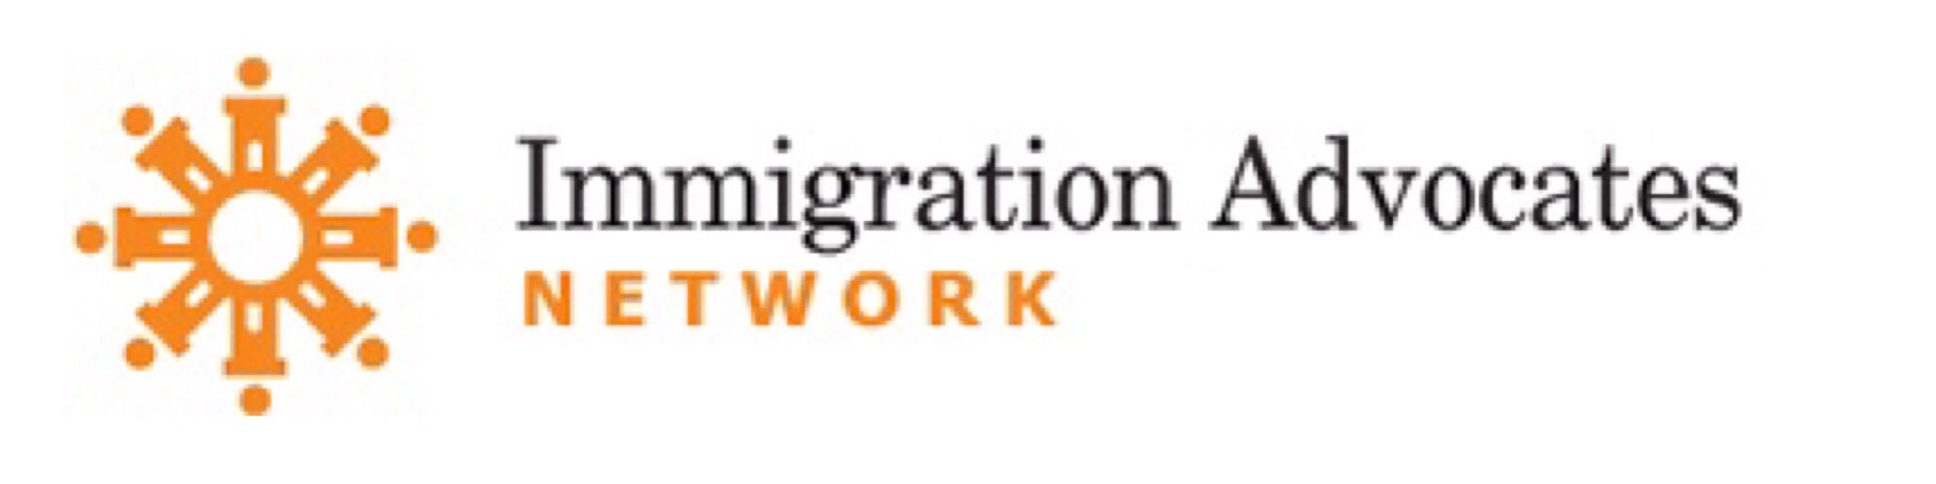 Logo de la Red de Defensores de Inmigración